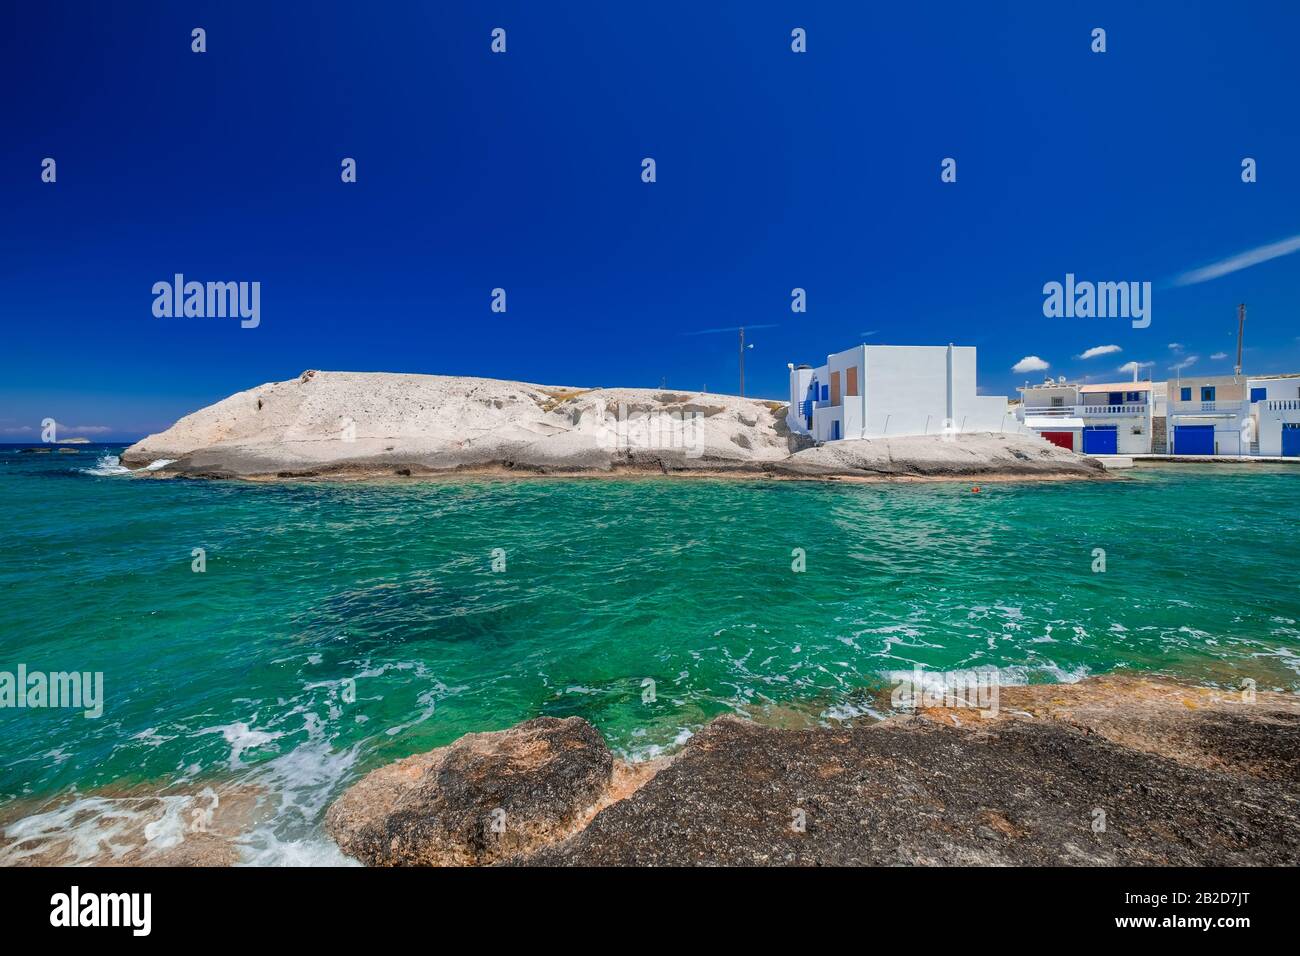 Blick auf das traditionelle Fischerdorf mit weißen Häusern an der Küste. Türkisfarbenes Wasser der Insel Milos im ägeischen Meer. Wundervolle mediterrane Landschaft. Greec Stockfoto